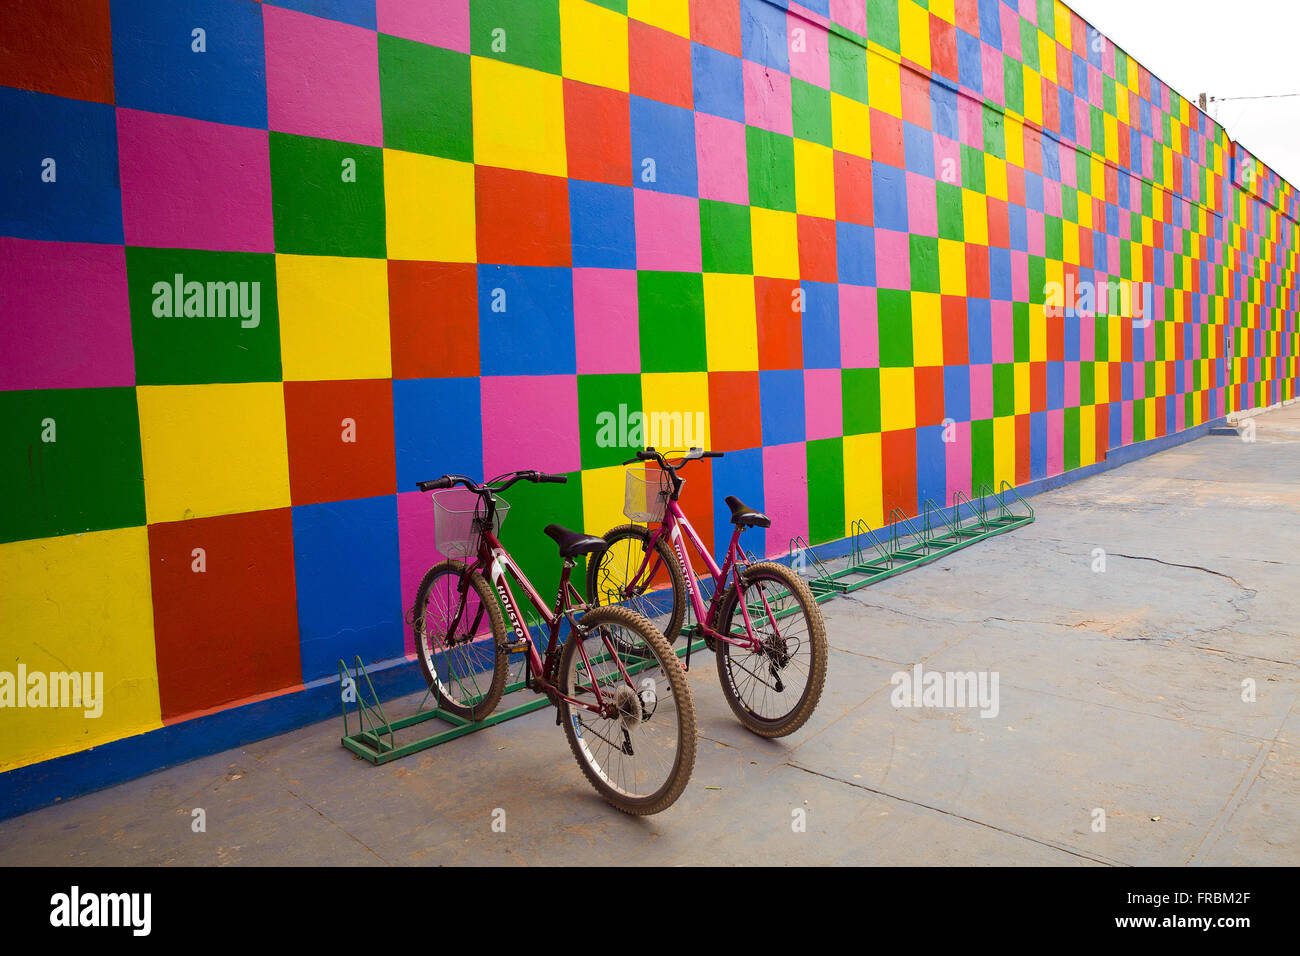 Mur peint en différentes couleurs Banque D'Images